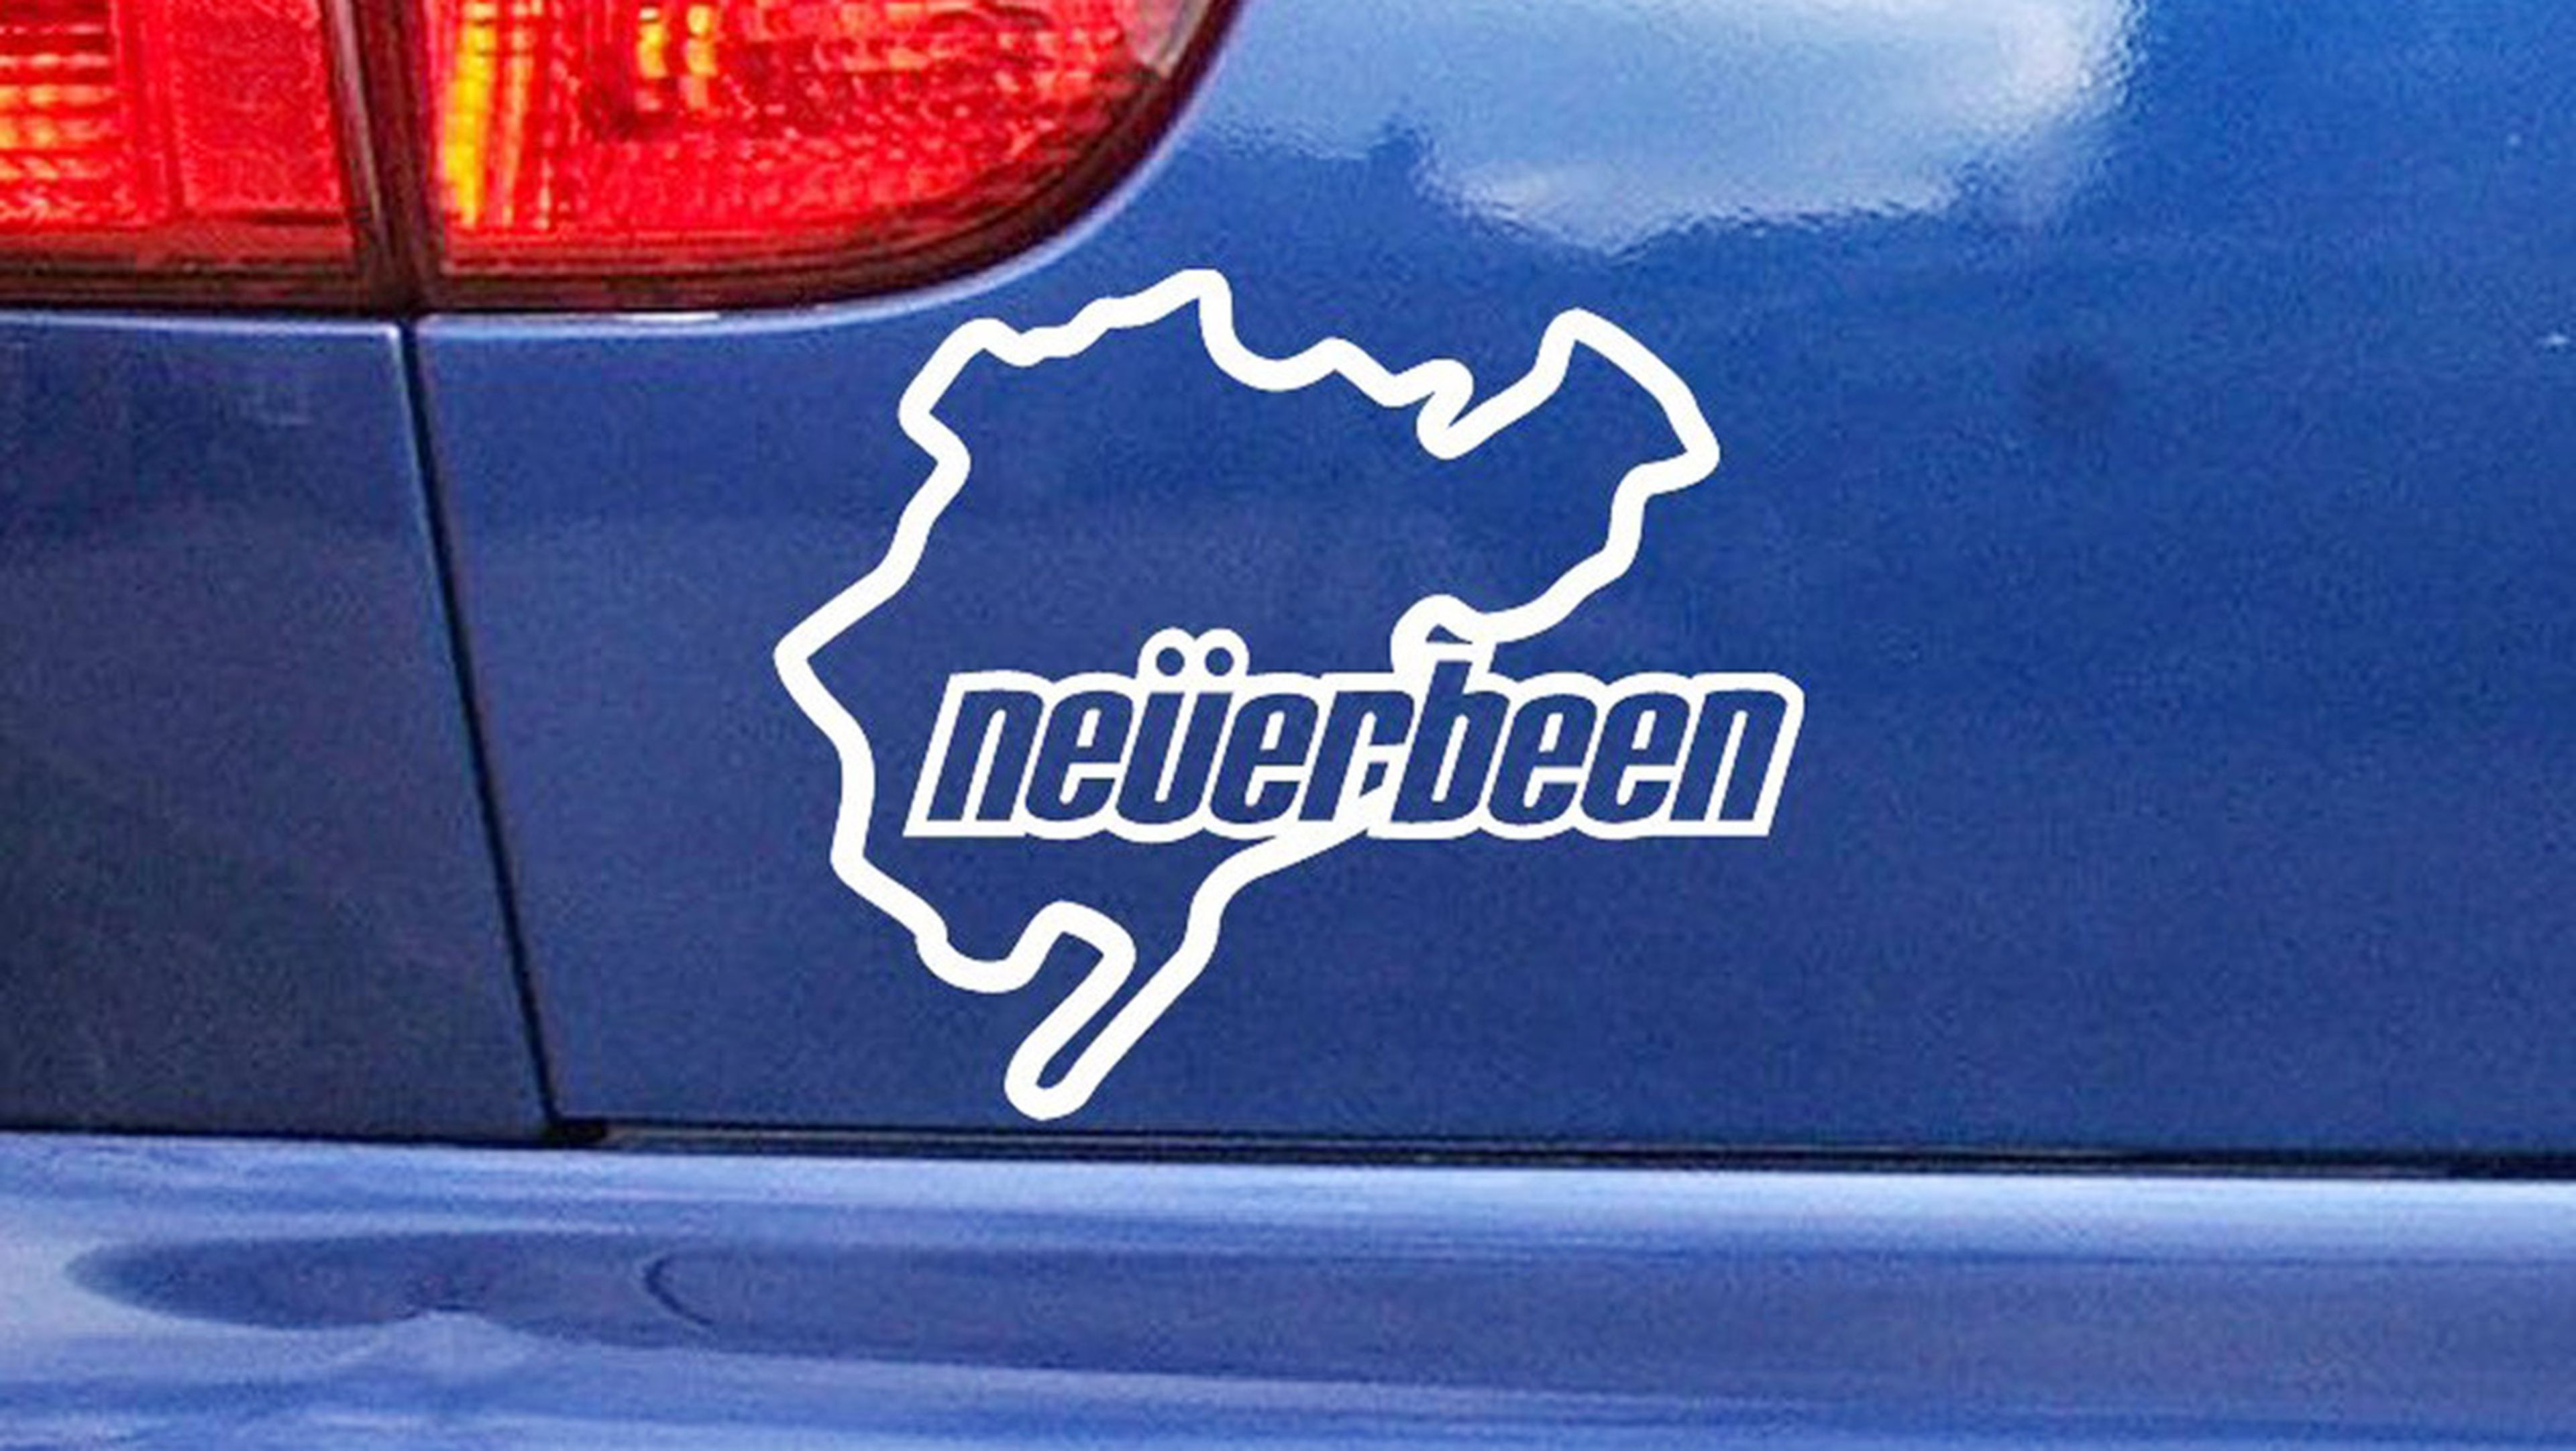 Los 9 mejores regalos para los locos de Nürburgring - Pegatina Neverbeen